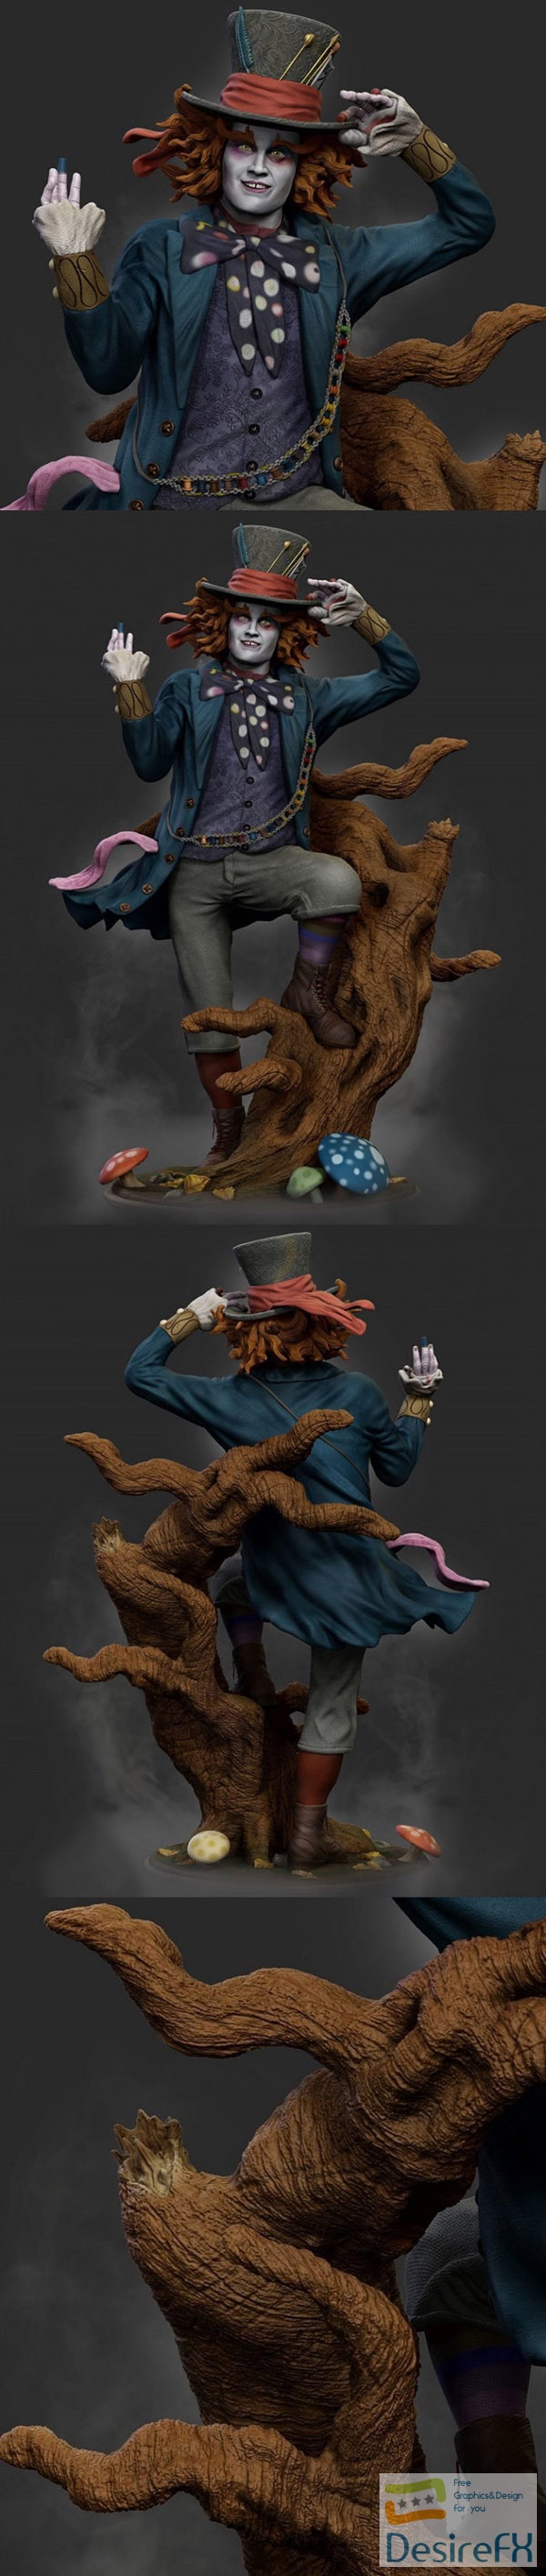 Mad Hatter – Alice in Wonderland – 3D Print